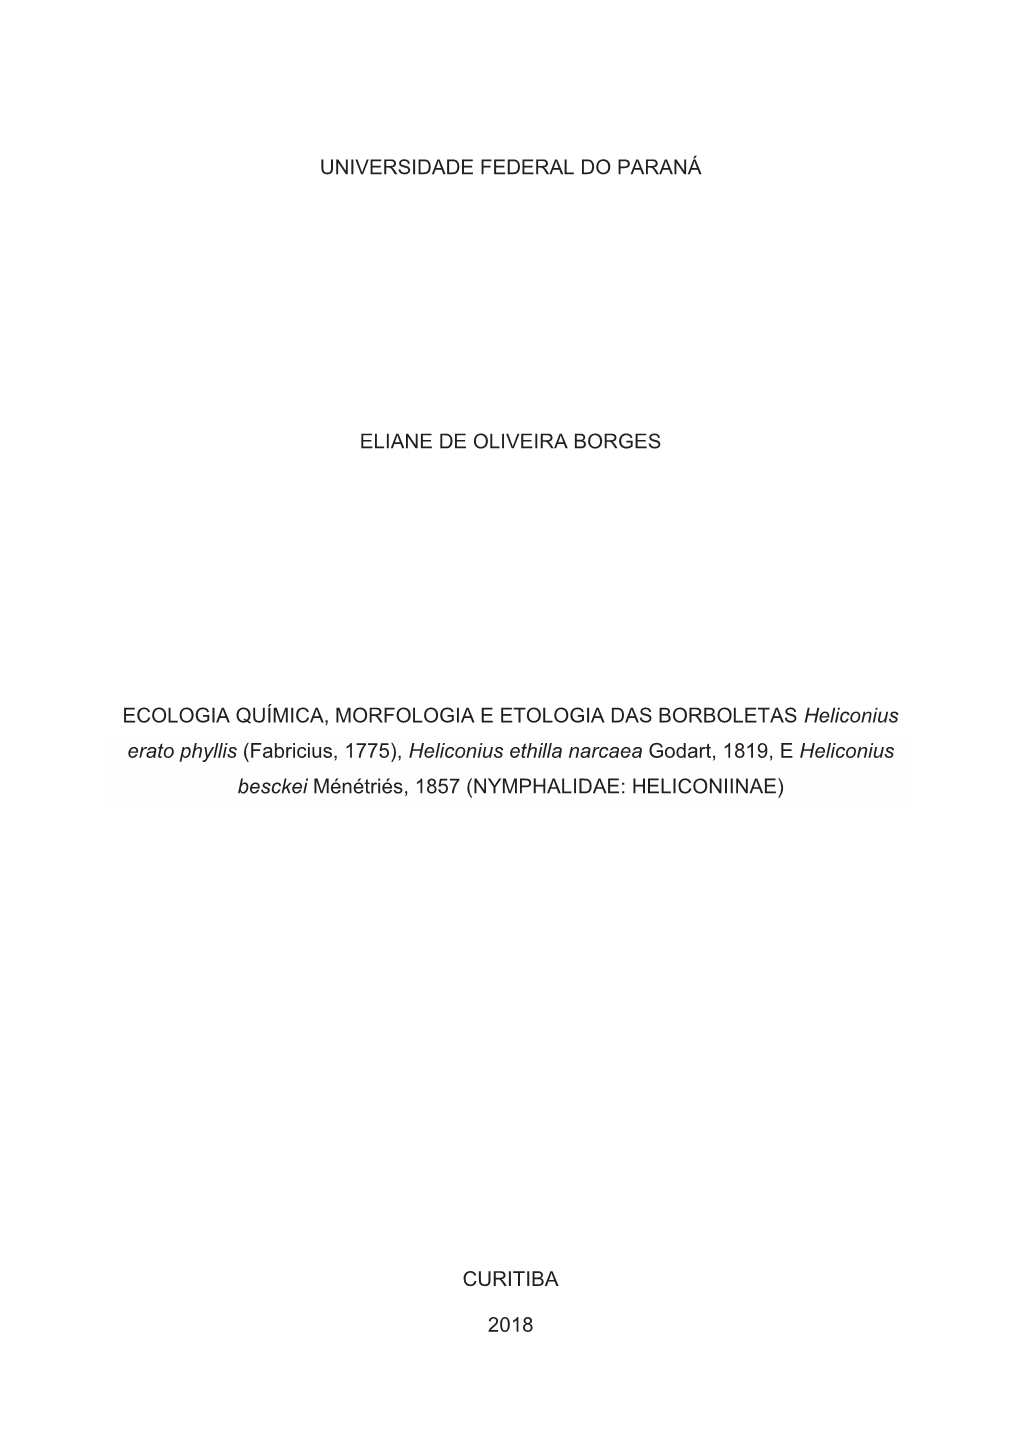 ELIANE DE OLIVEIRA BORGES.Pdf